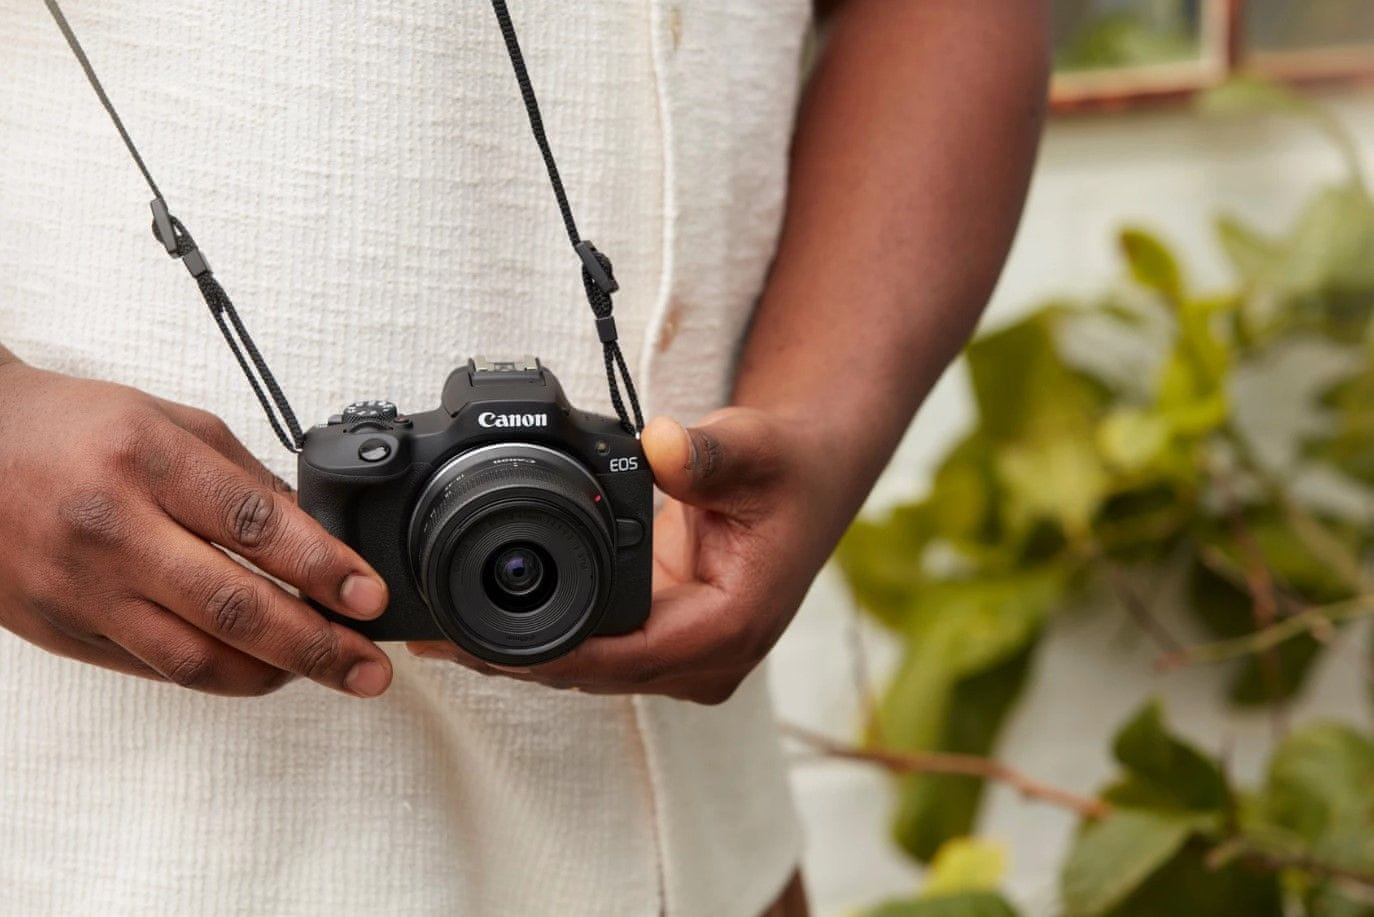  nagyszerű tükör nélküli fényképezőgép Canon EOS R50 kiváló képek kiváló minőségű videók nagyszerű vlogginghoz és streaminghez wifi Bluetooth usb 